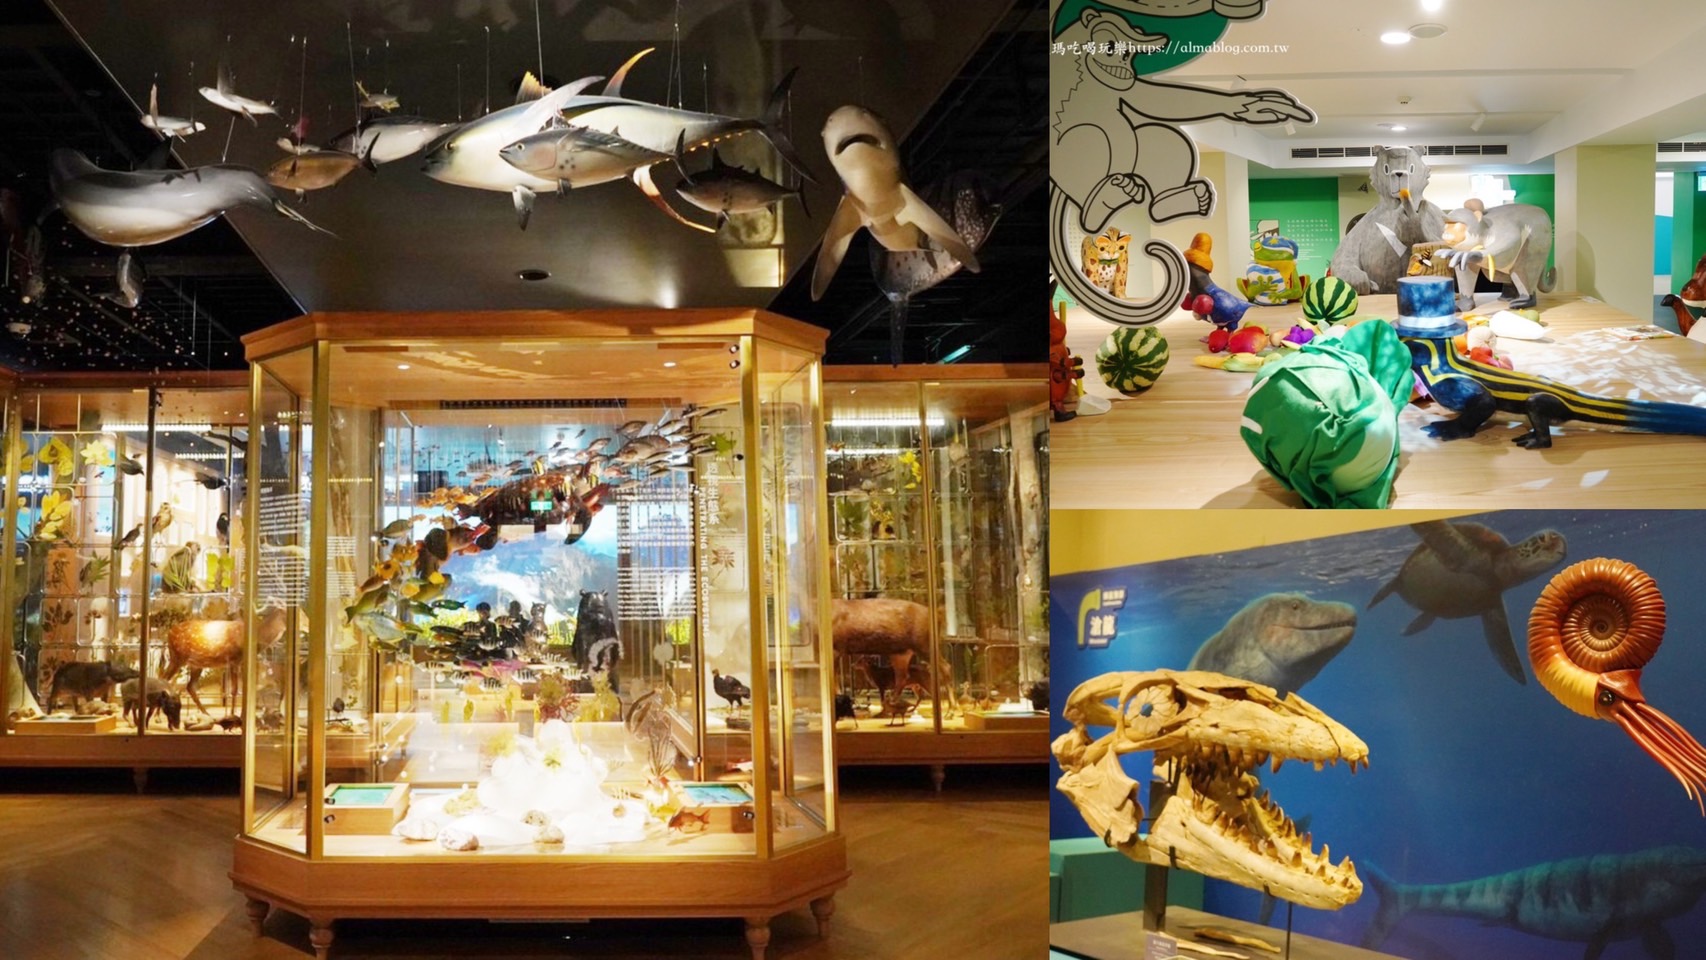 台北好玩,台北景點,台灣博物館,恐龍展,水怪,百年對話,親子景點 @艾瑪  吃喝玩樂札記